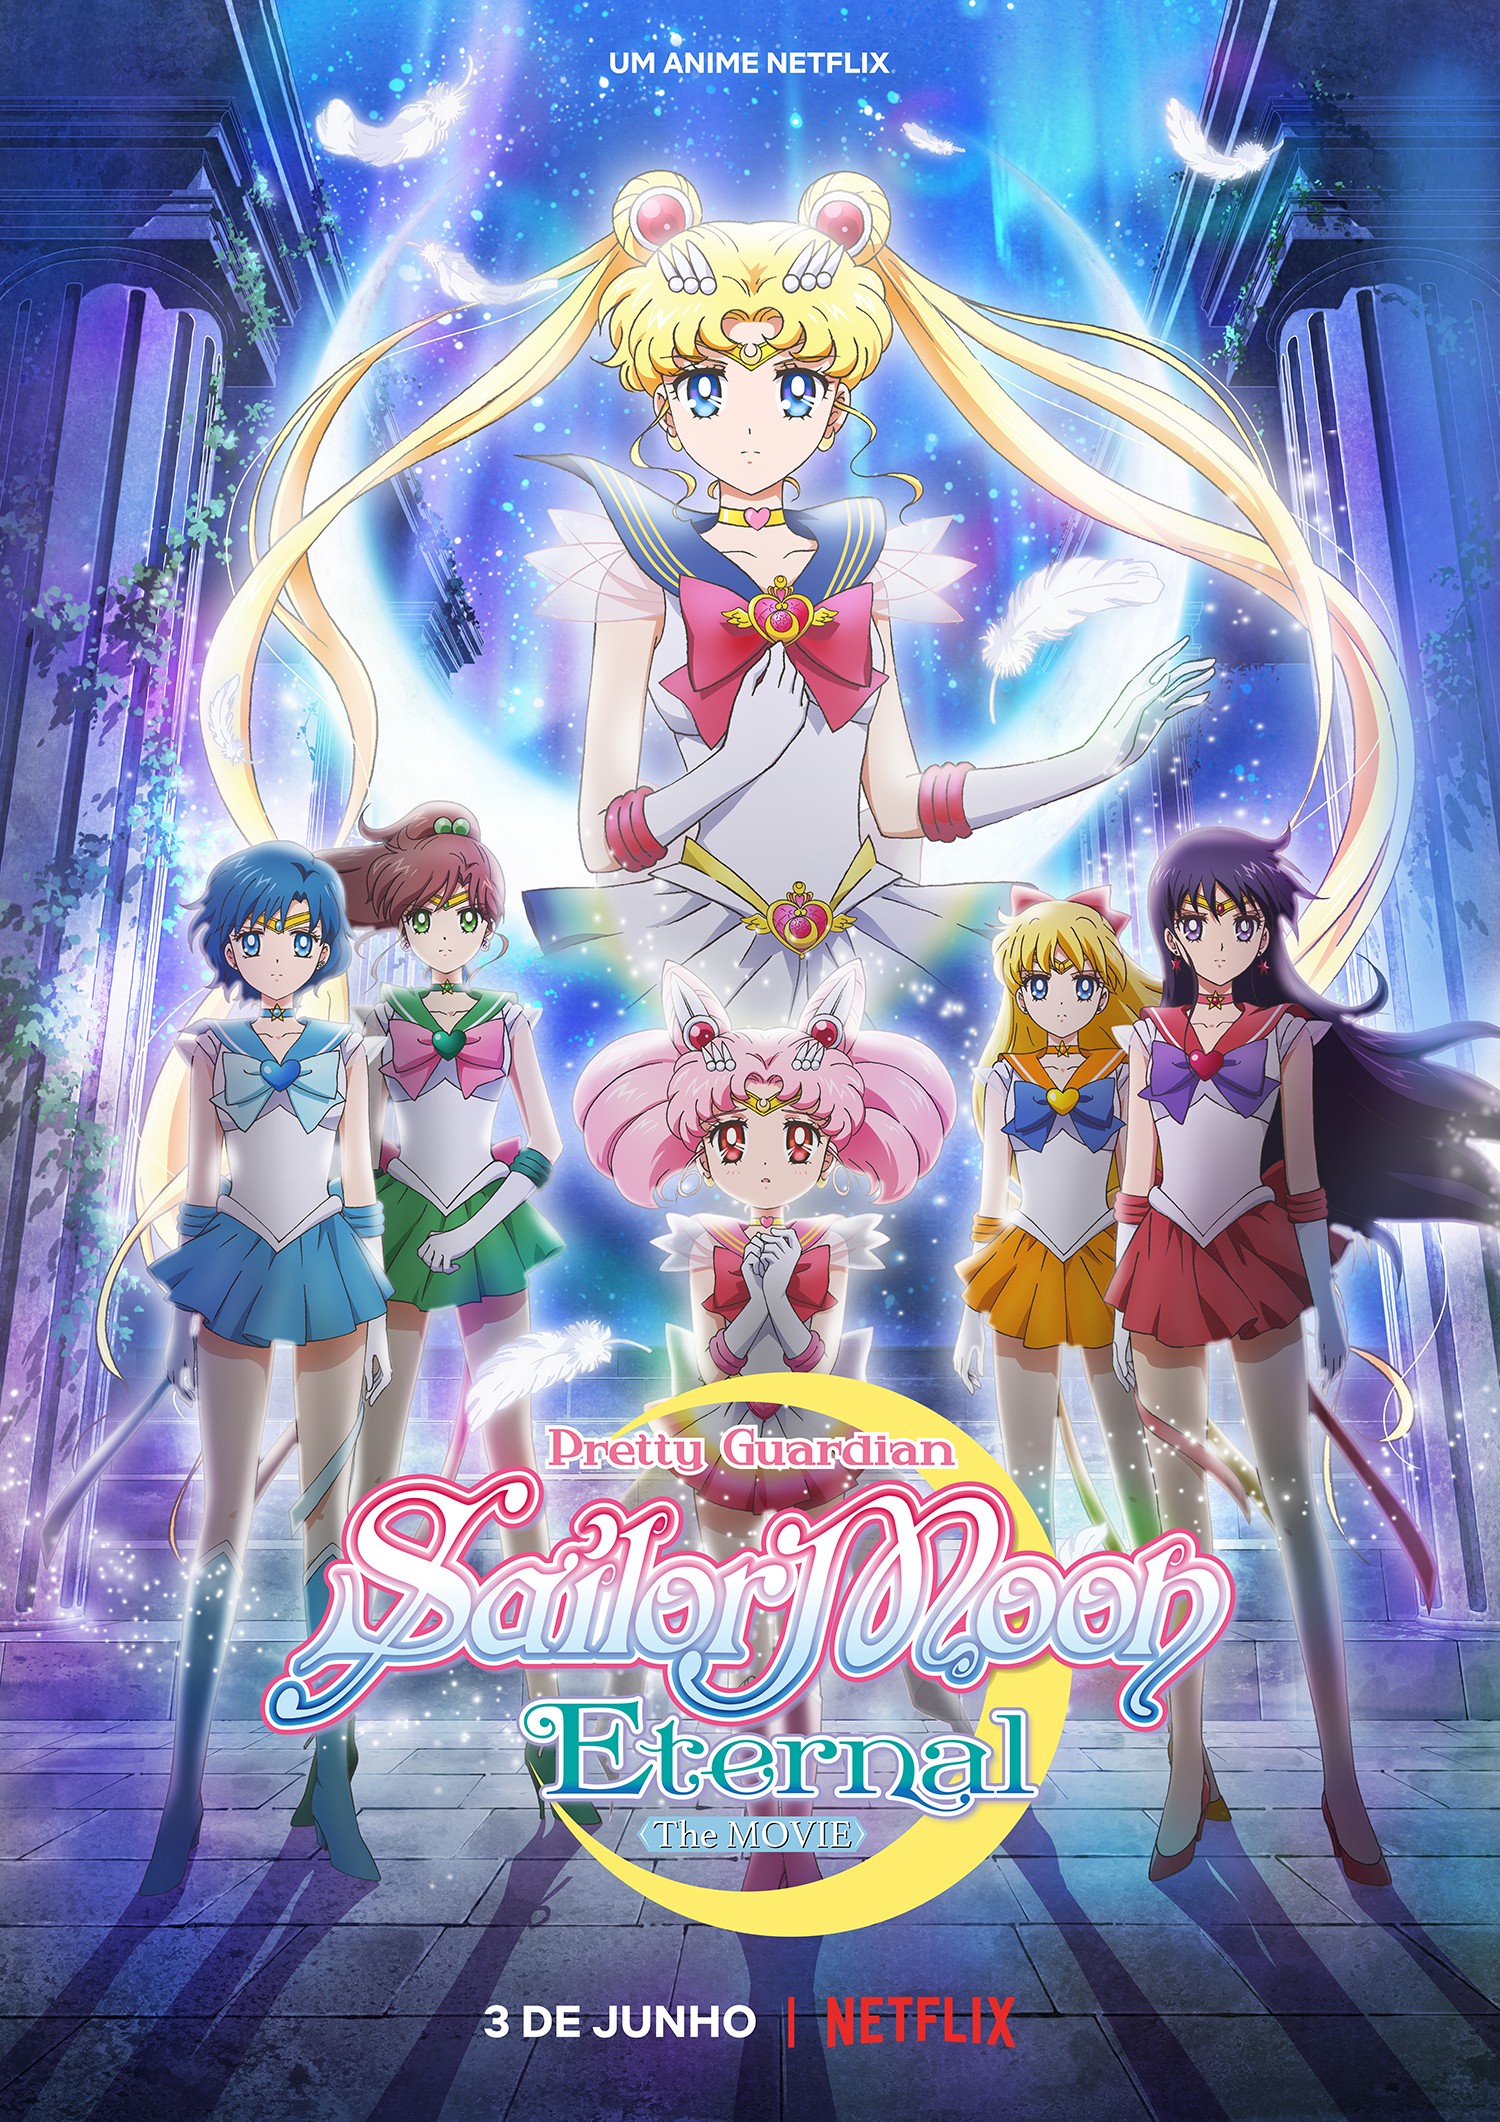 JBox on X: Streaming  Veio aí? 'Sailor Moon Crystal' estreia sem dublagem  na Netflix. A Toei havia anunciado que a série teria uma versão dublada,  mas não veio, ao menos por